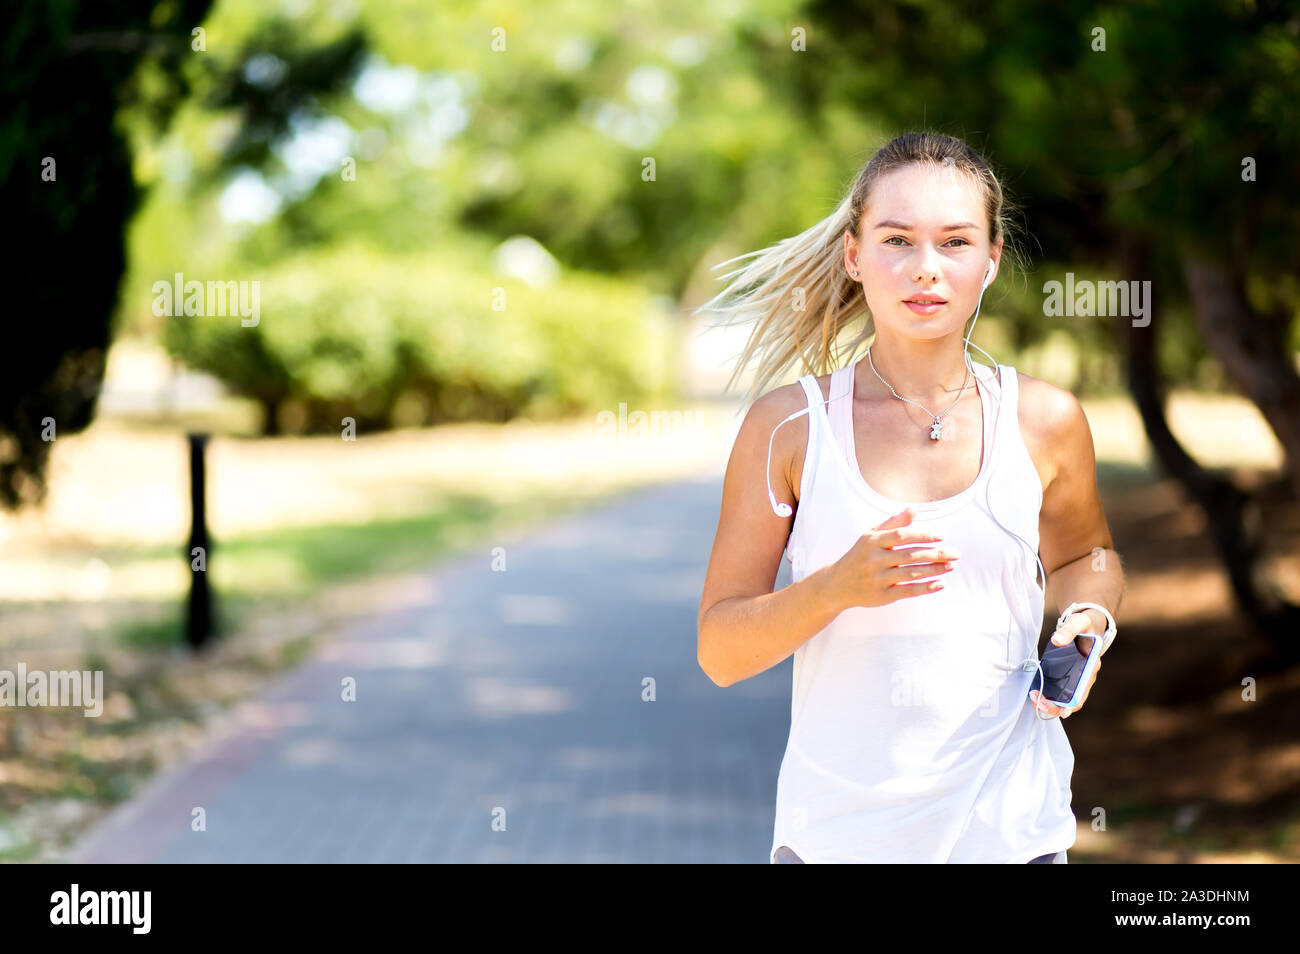 Runner Frau Joggen im Sommer Fitness Training. Laufen, Sport, gesunden, aktiven Lebensstil Konzept Stockfoto